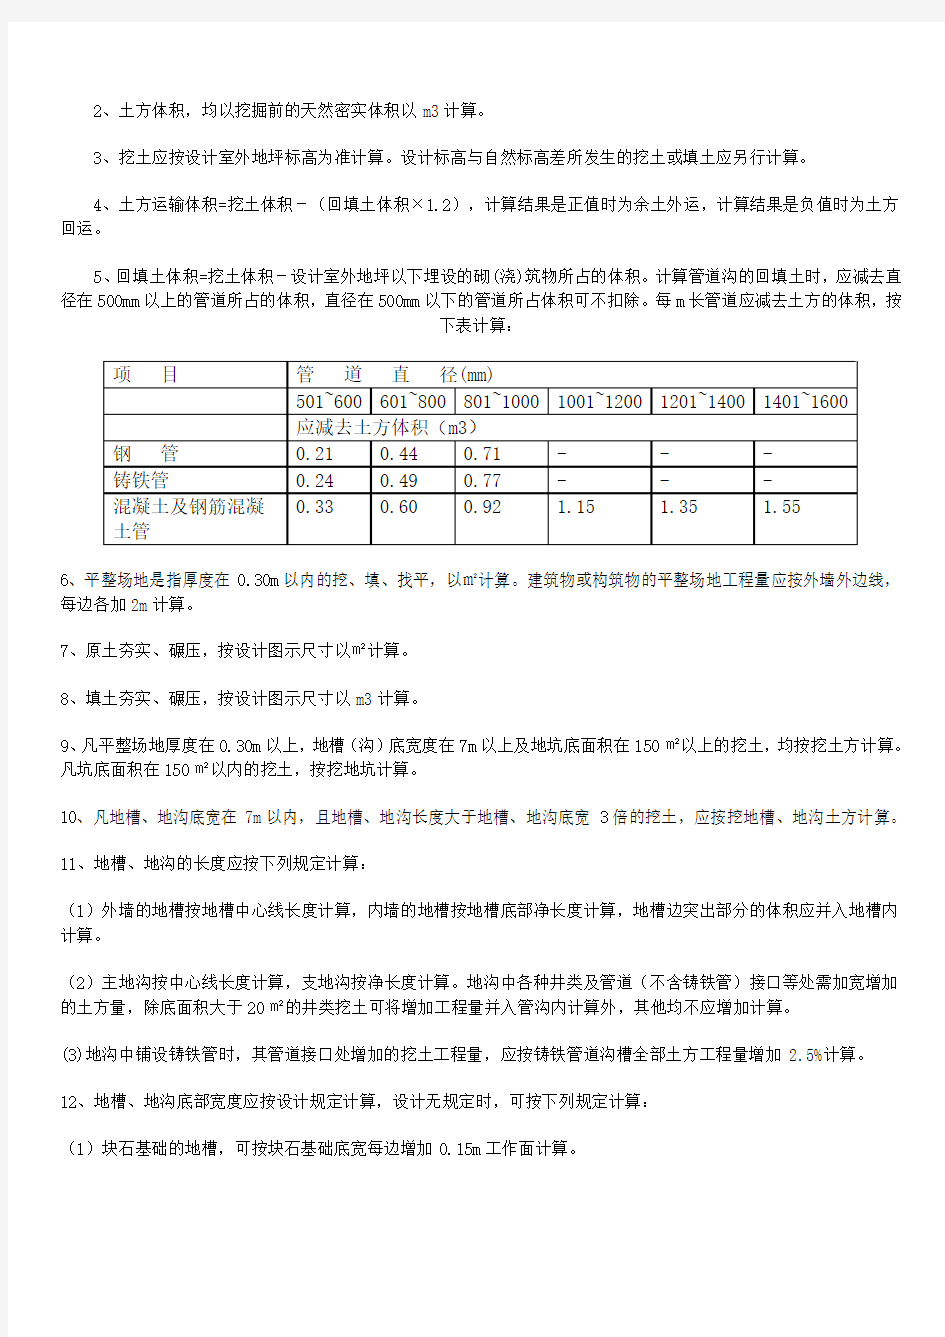 2013年甘肃省建筑与装饰工程预算定额说明(含章节说明)